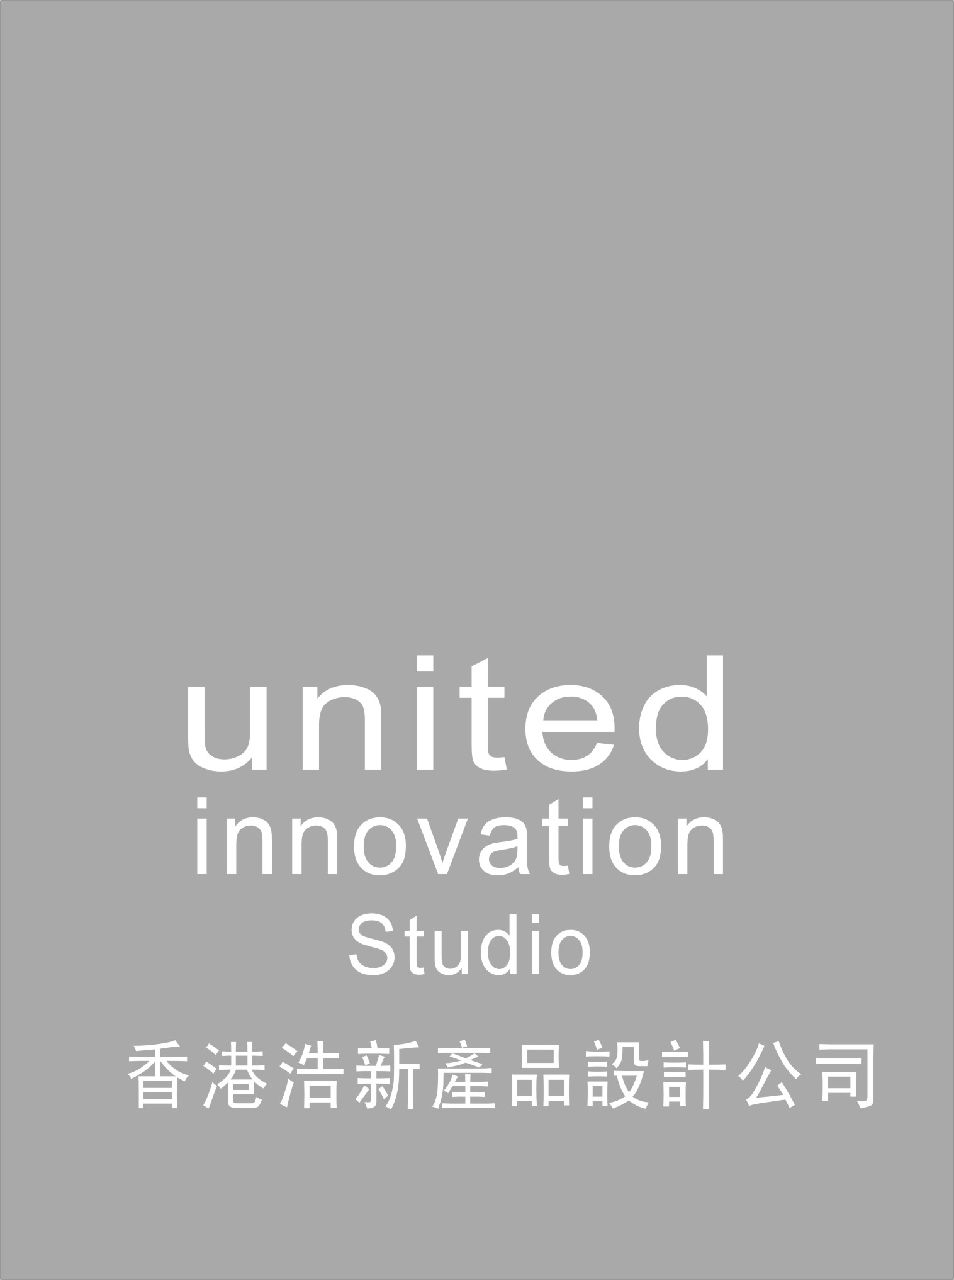 香港浩新產品設計公司